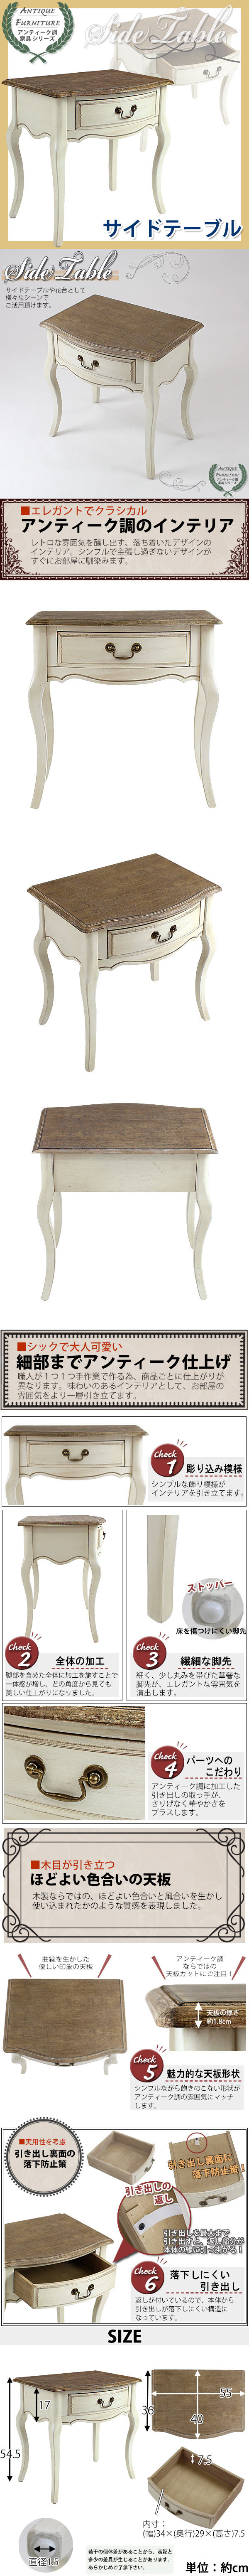 経典アンティーク調 サイドテーブル 木製 家具 白 花台 テーブル サイドテーブル